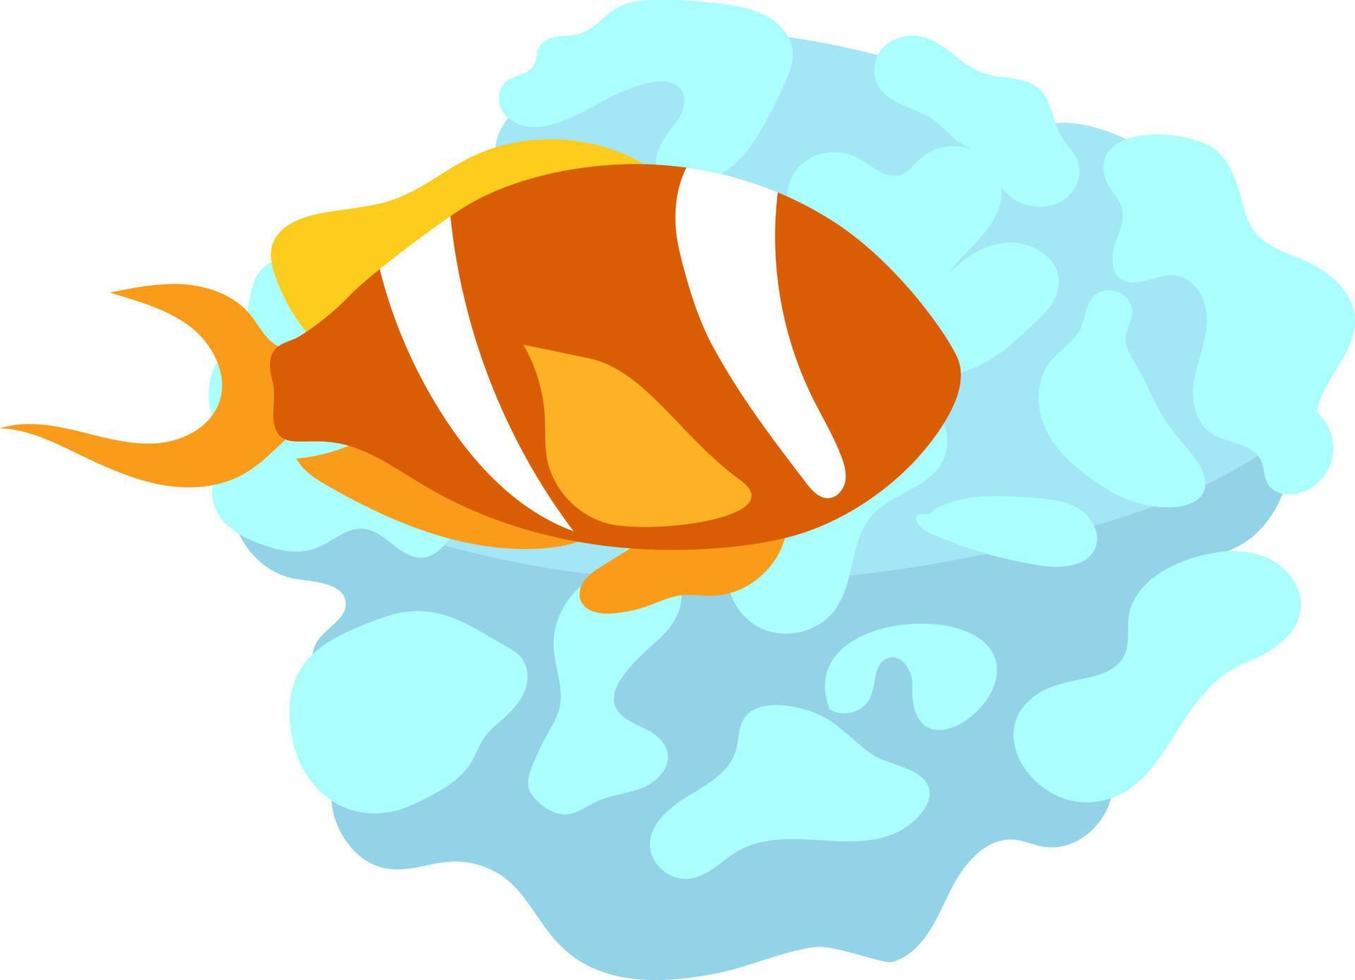 pesce pagliaccio che vive nell'oggetto vettoriale di colore semi piatto della barriera corallina